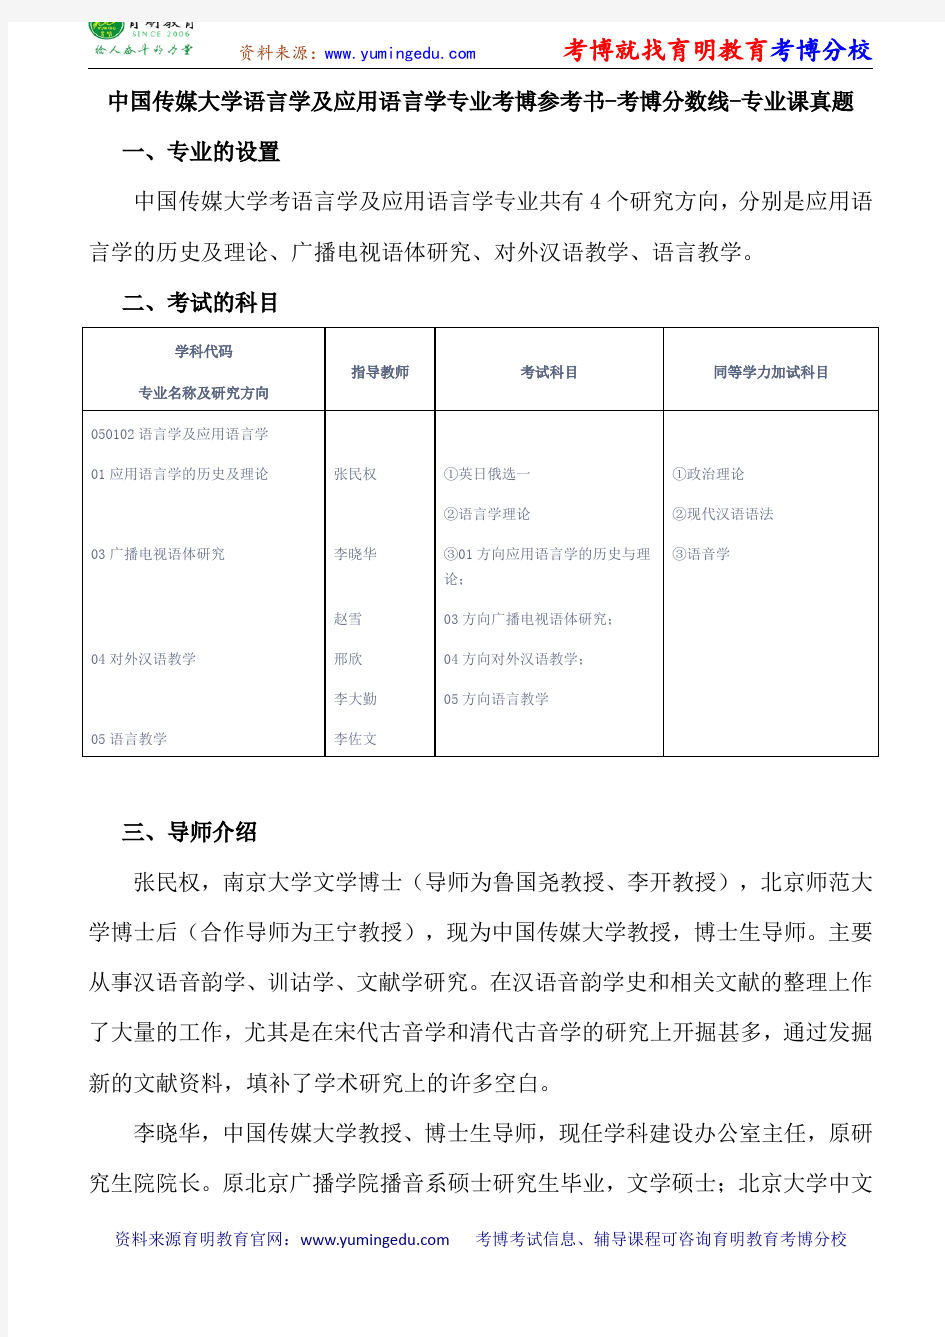 中国传媒大学语言学及应用语言学专业考博参考书-考博分数线-专业课真题